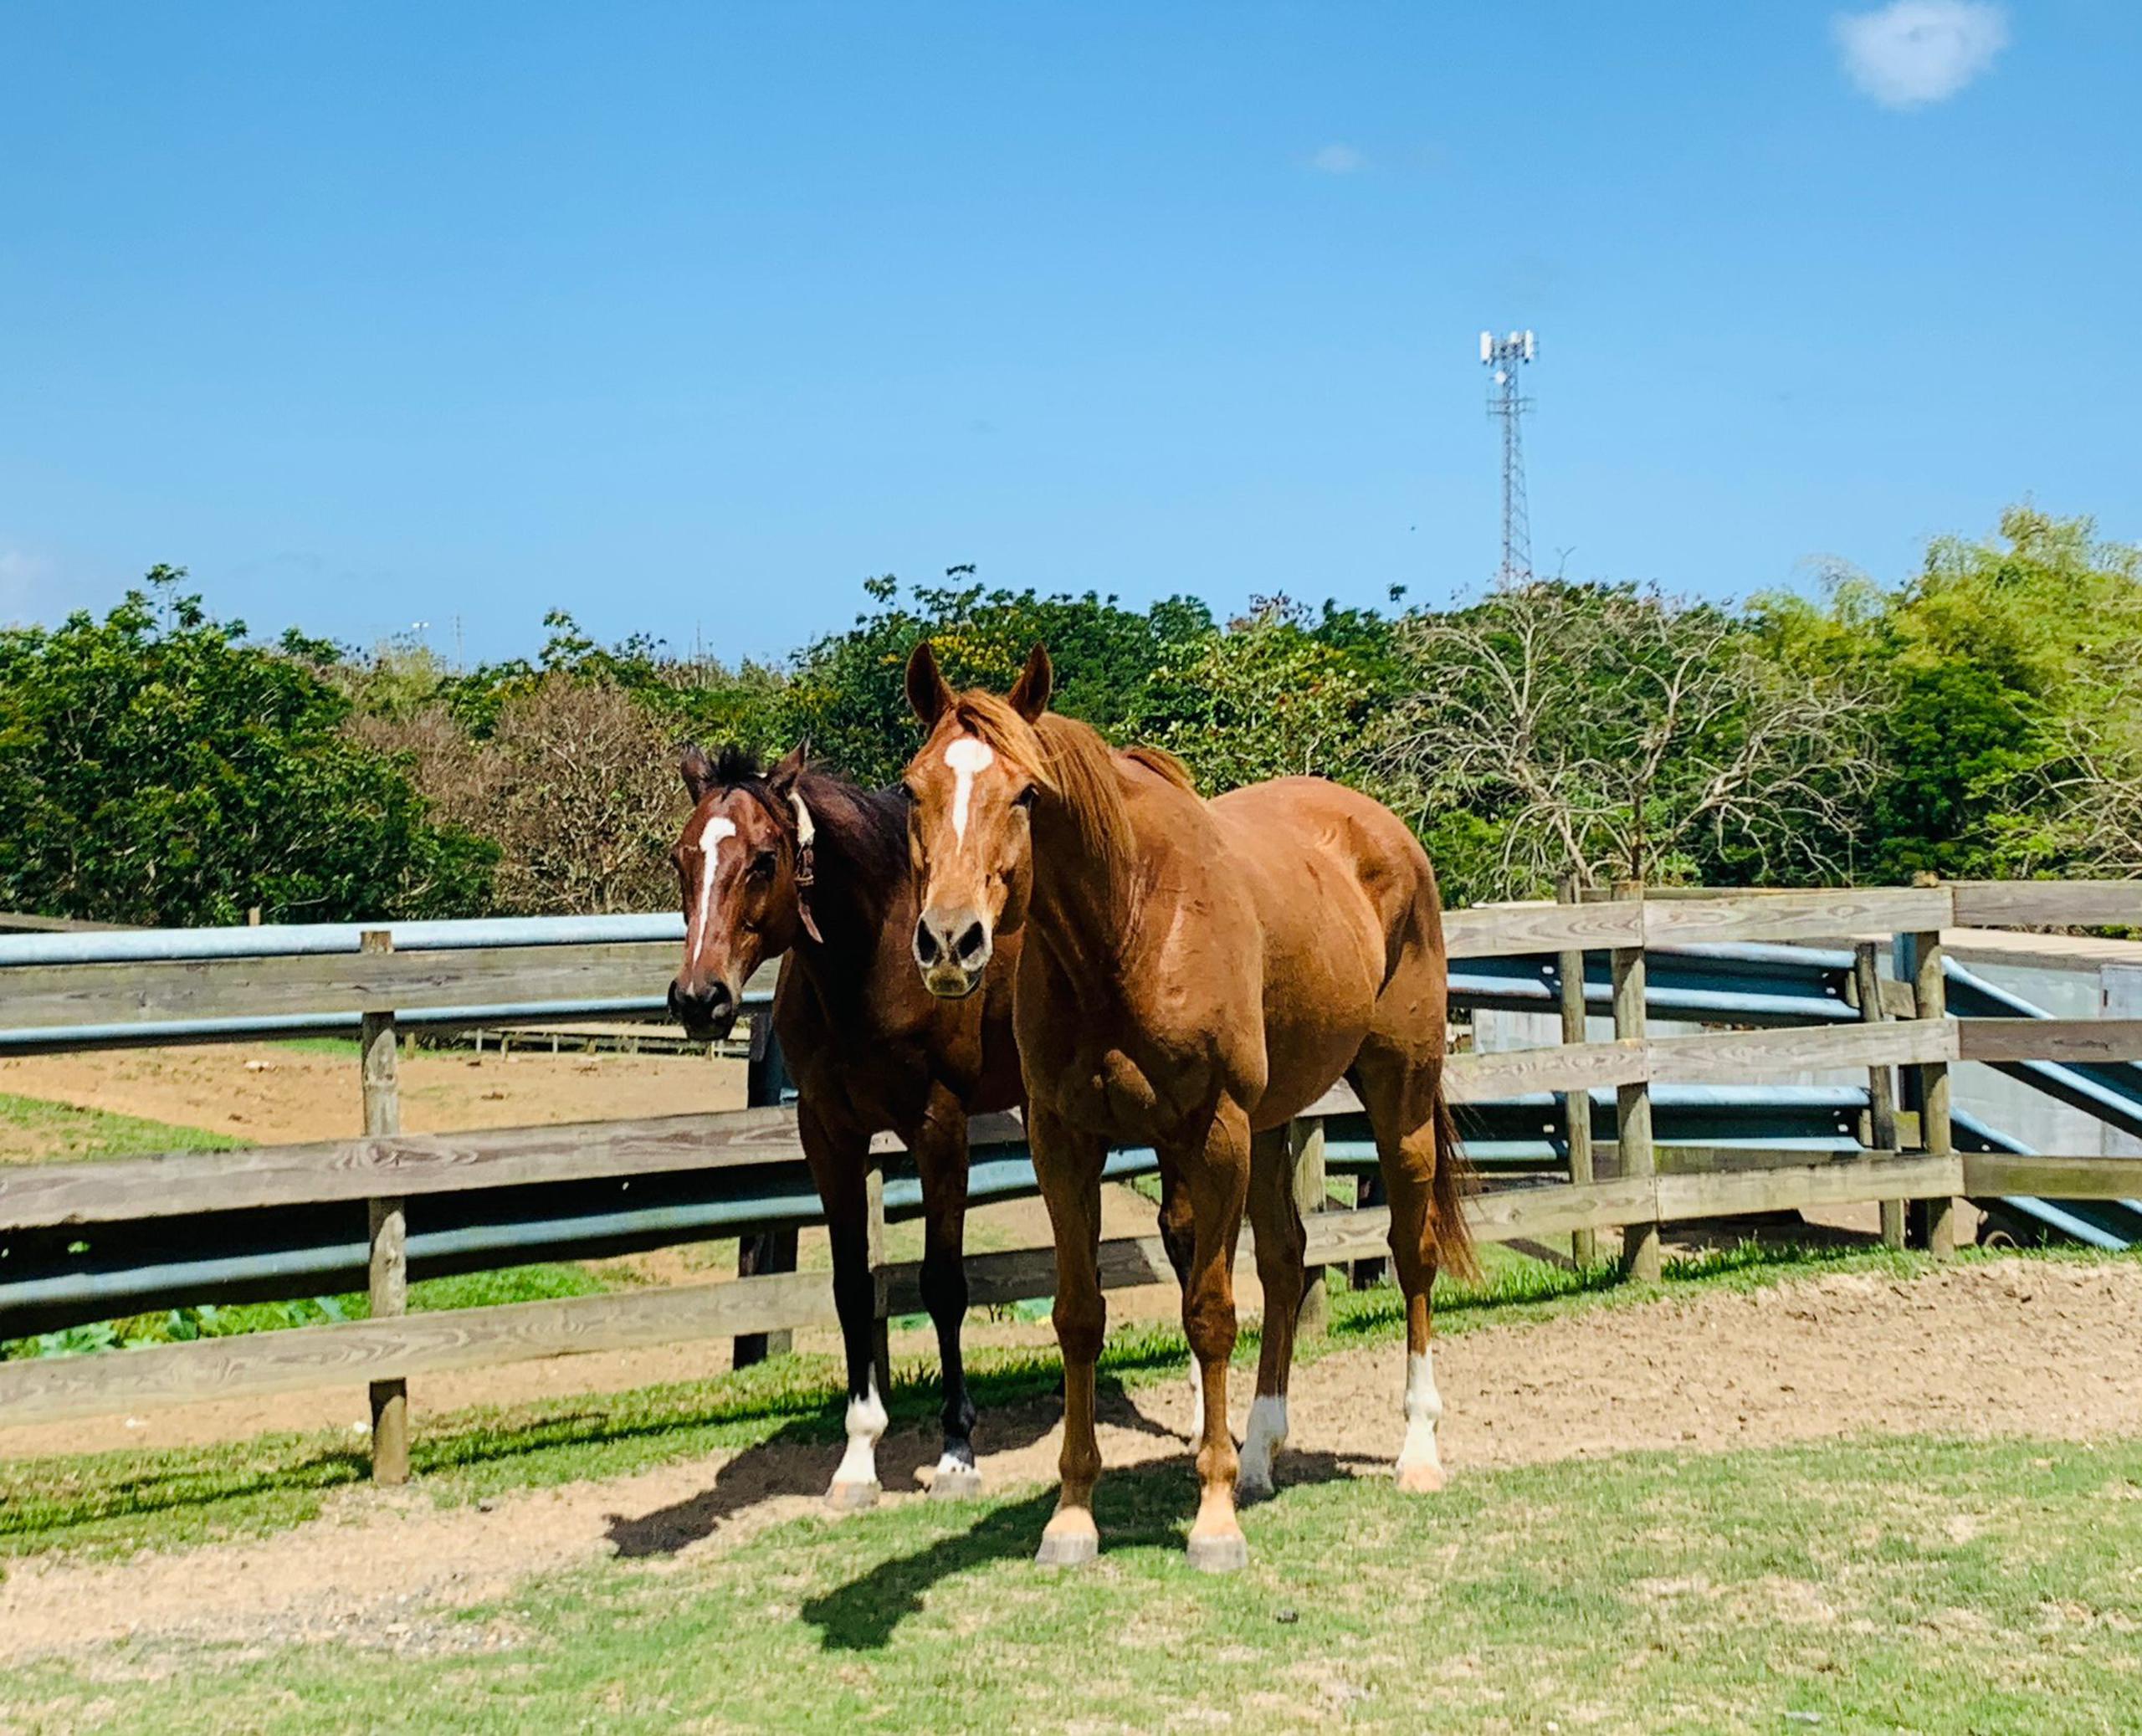 La Caribbean Thoroughbred Aftercare en Río Grande invita a su finca en Río Grande para un tiempo de educación y entretenimiento con caballos de carrera retirados.